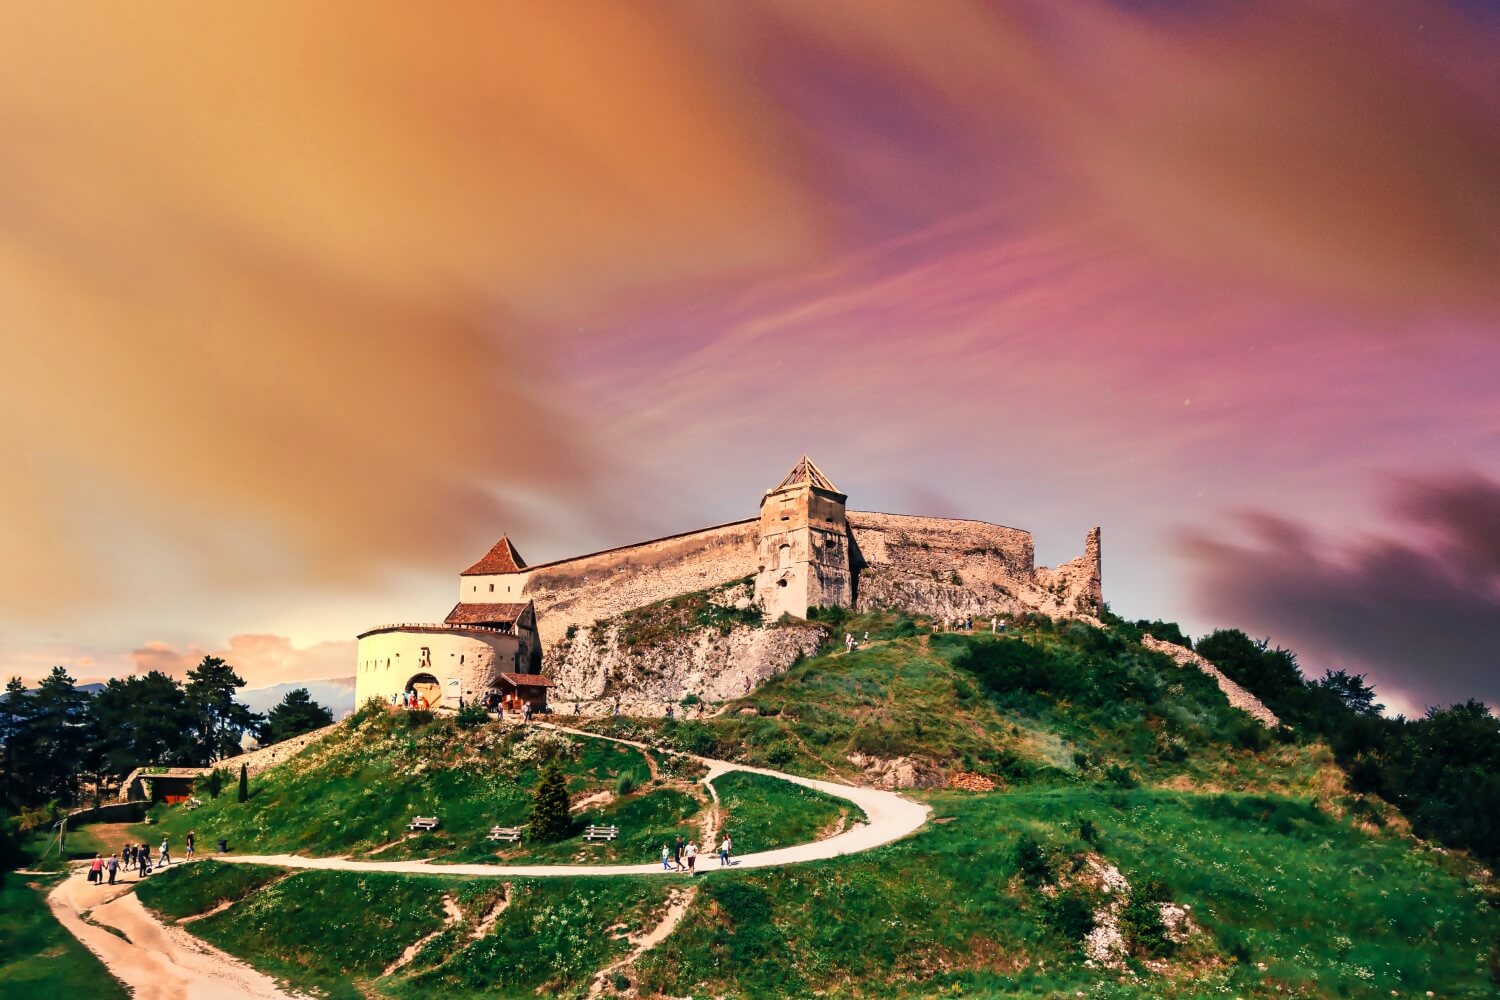 Râșnov Fortress